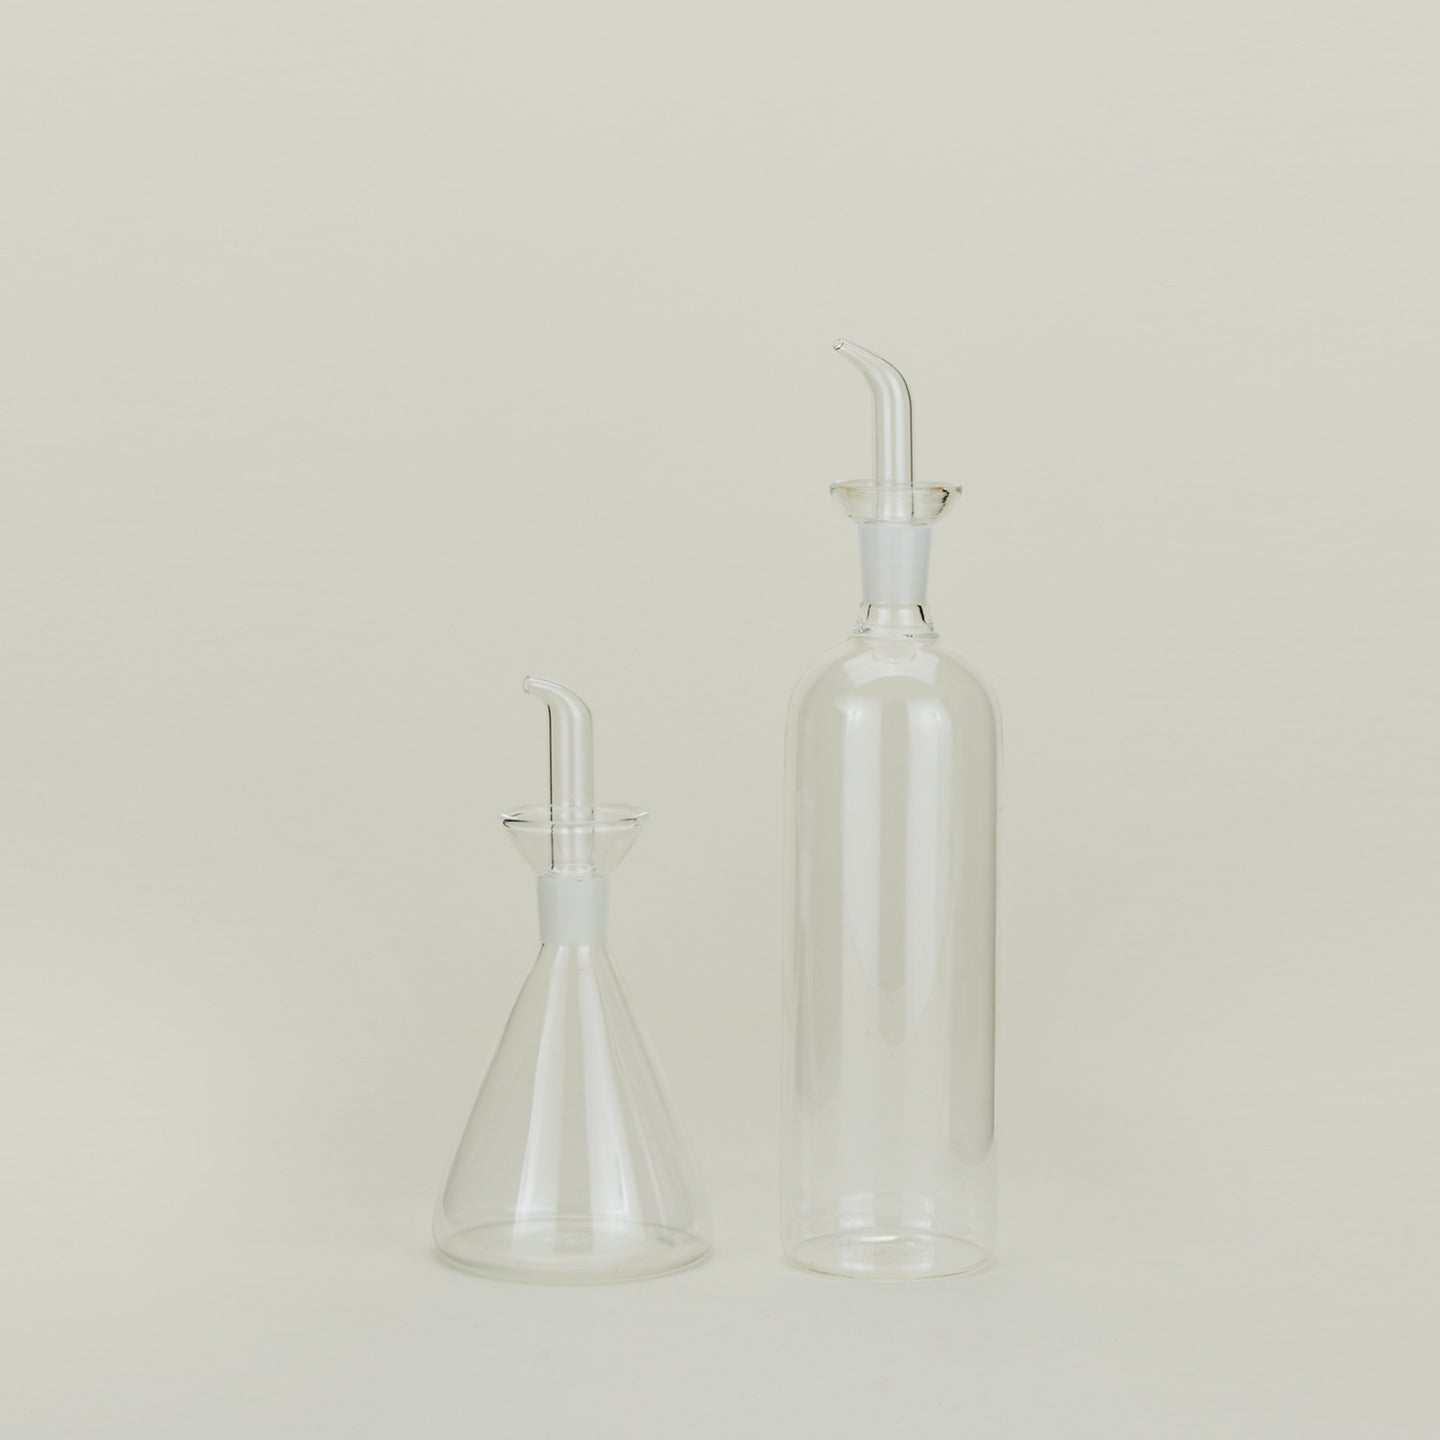 Set of two glass oil and vinegar bottles